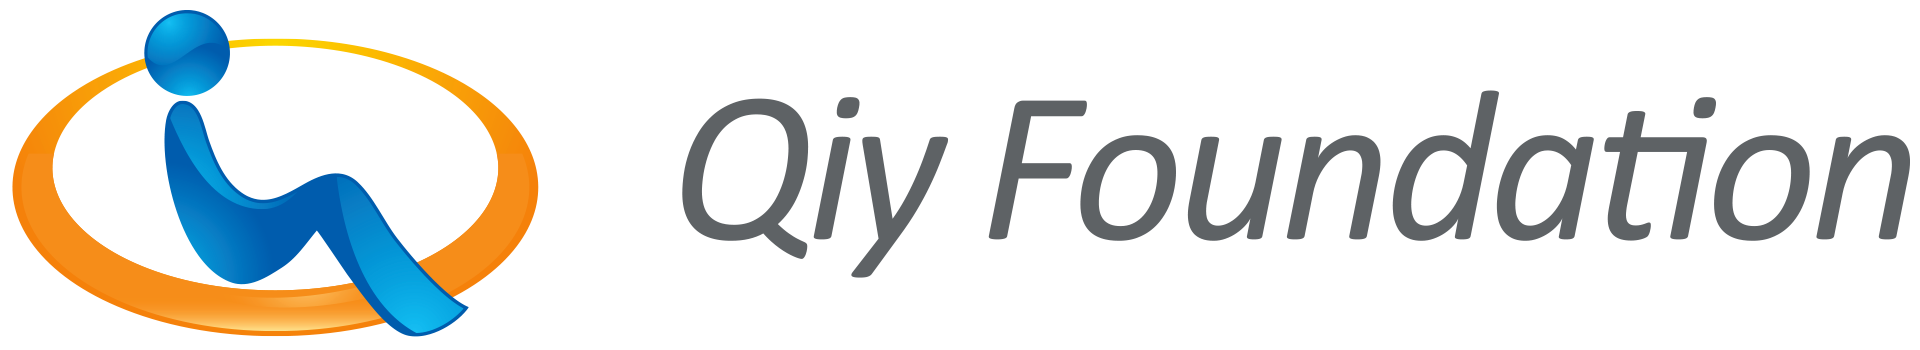 Qiy Foundation